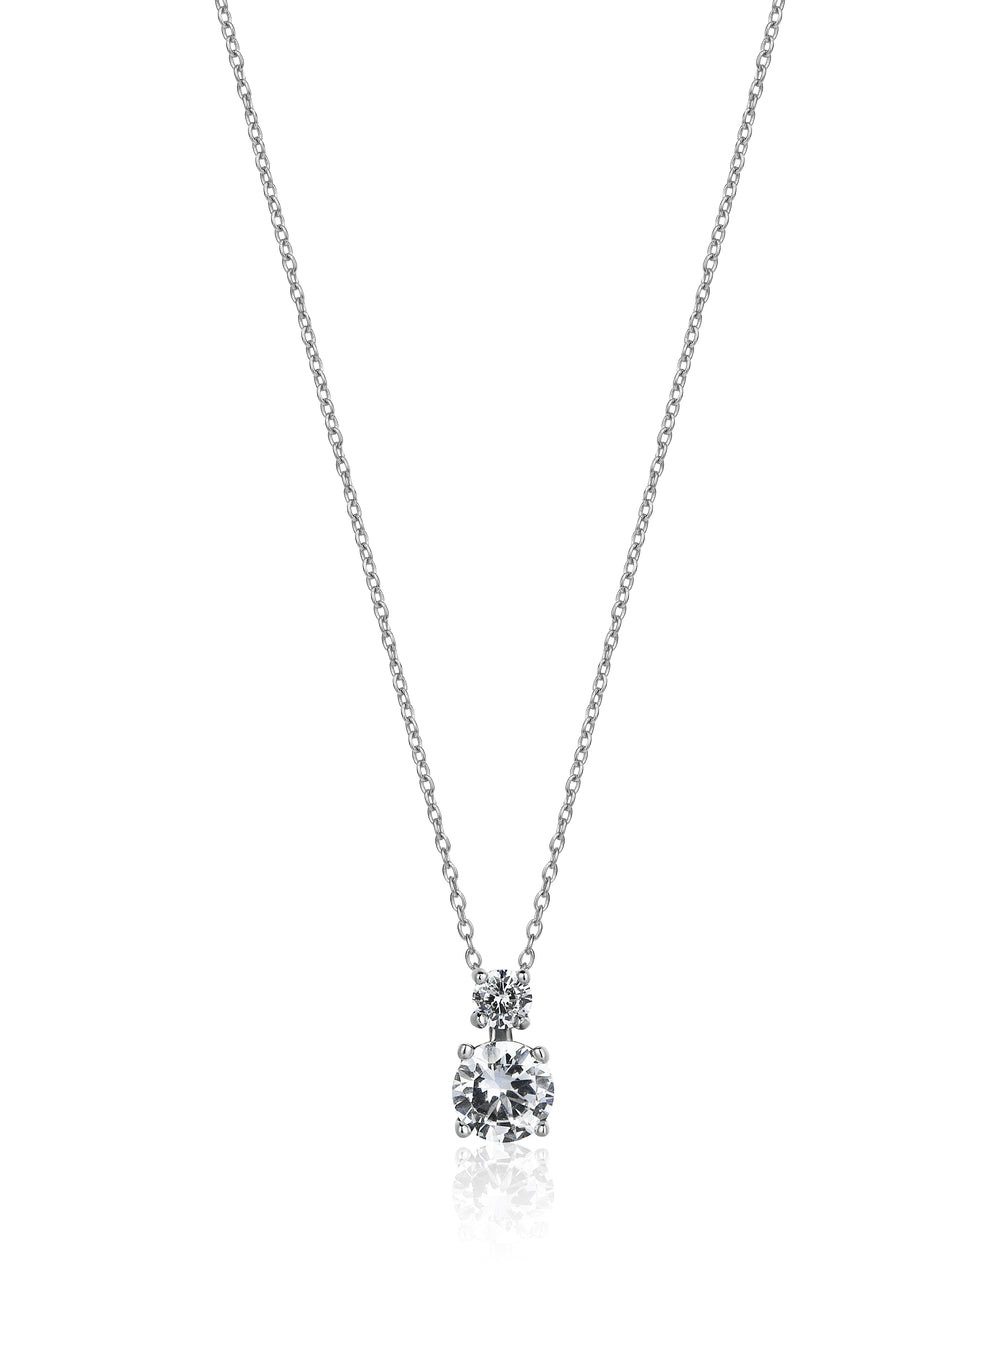 1.20 Carat Diamond Necklace